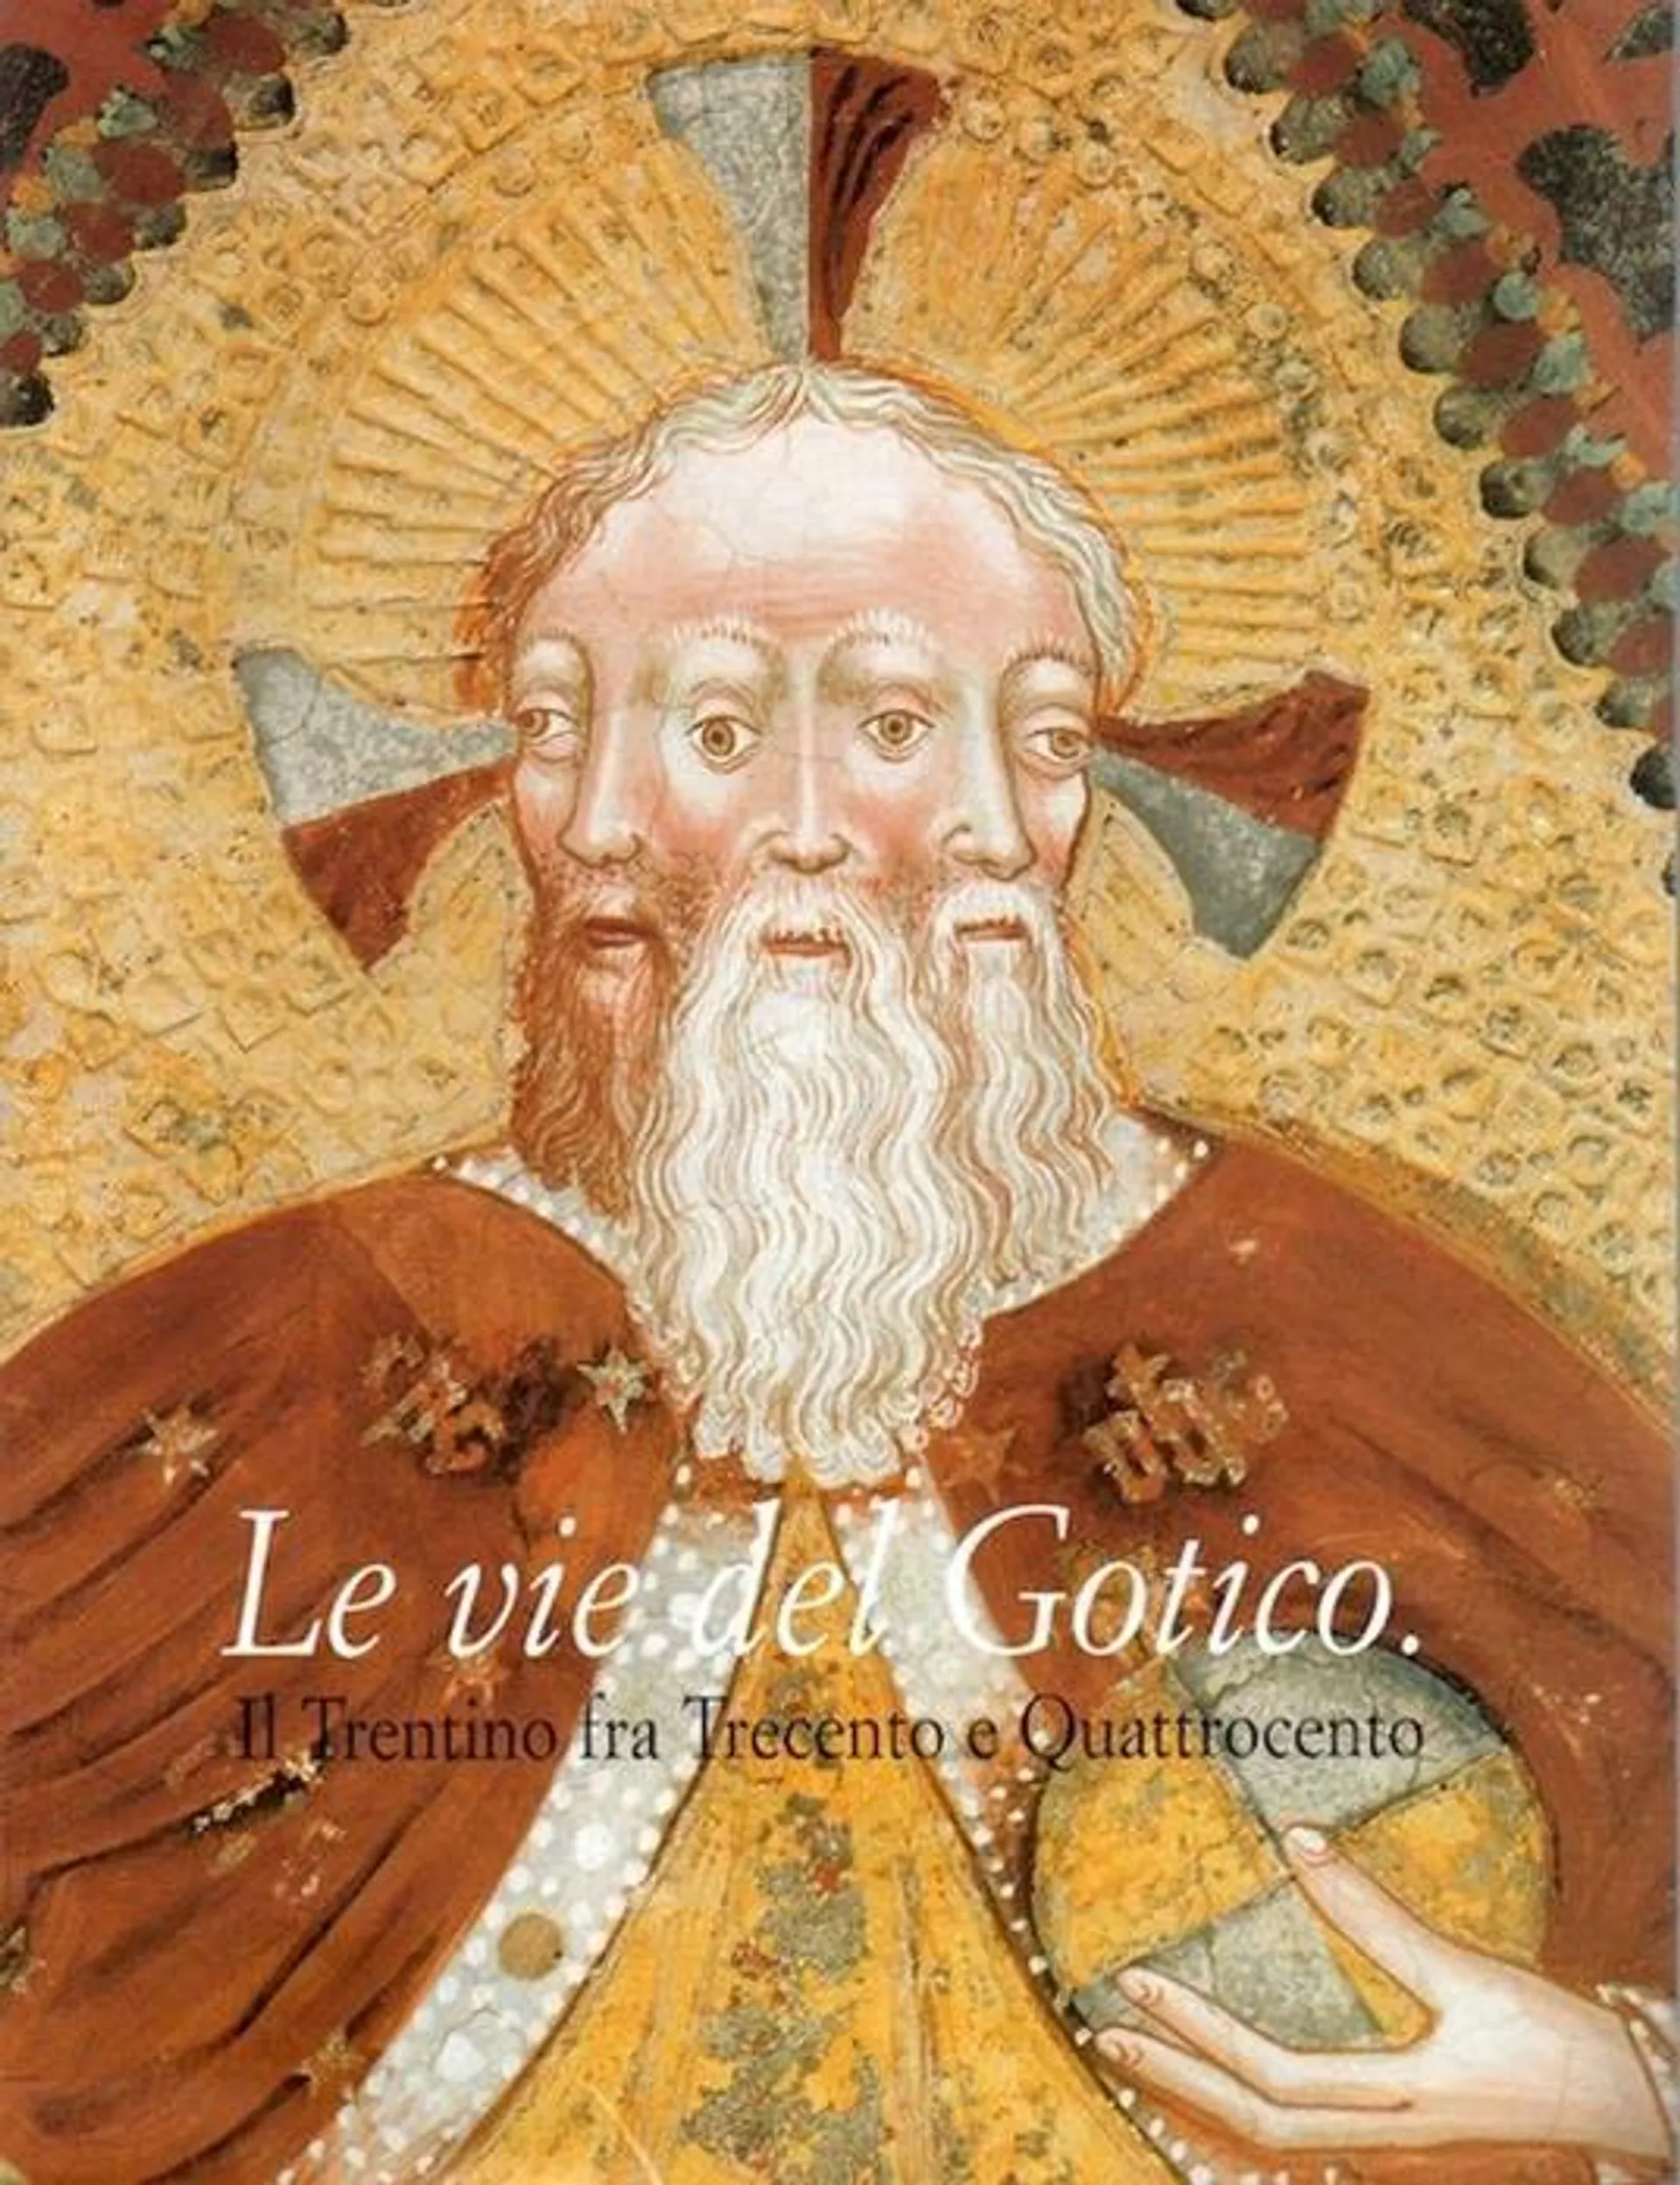 Le vie del gotico: il Trentino fra Trecento e Quattrocento